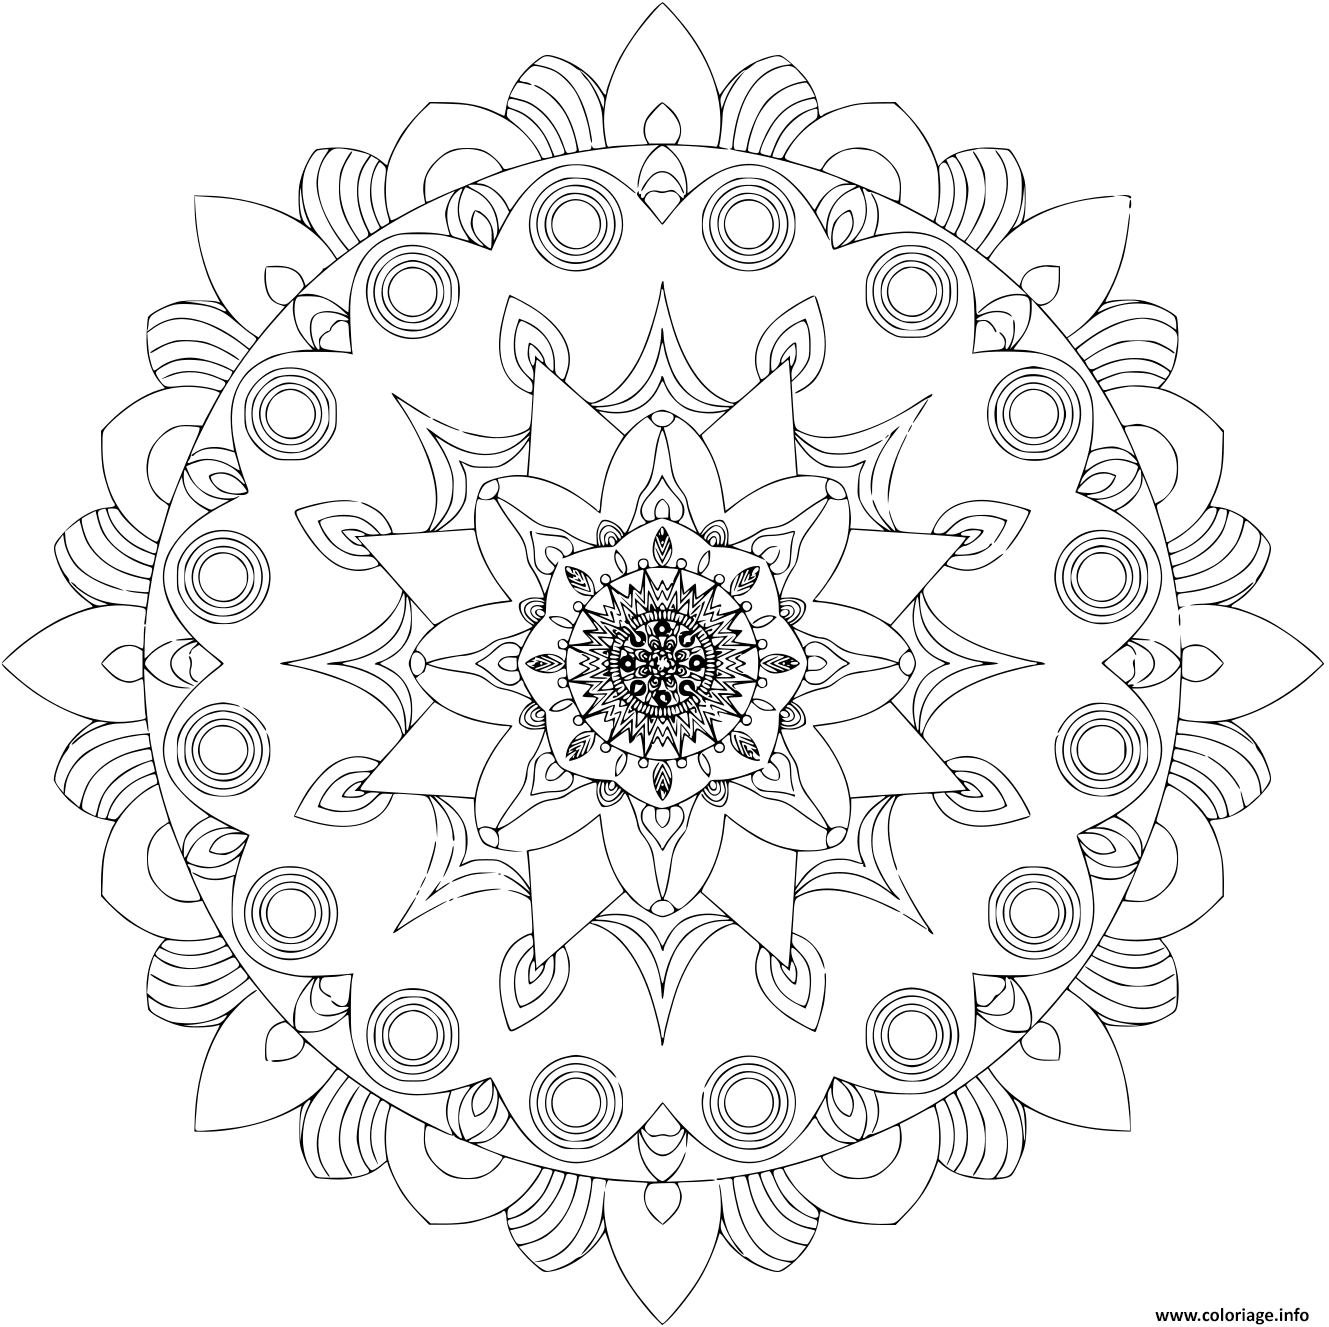 Coloriage Mandala Islam Arabic Indian Moroccan Dessin Mandala À Imprimer avec Coloriage Mandala 